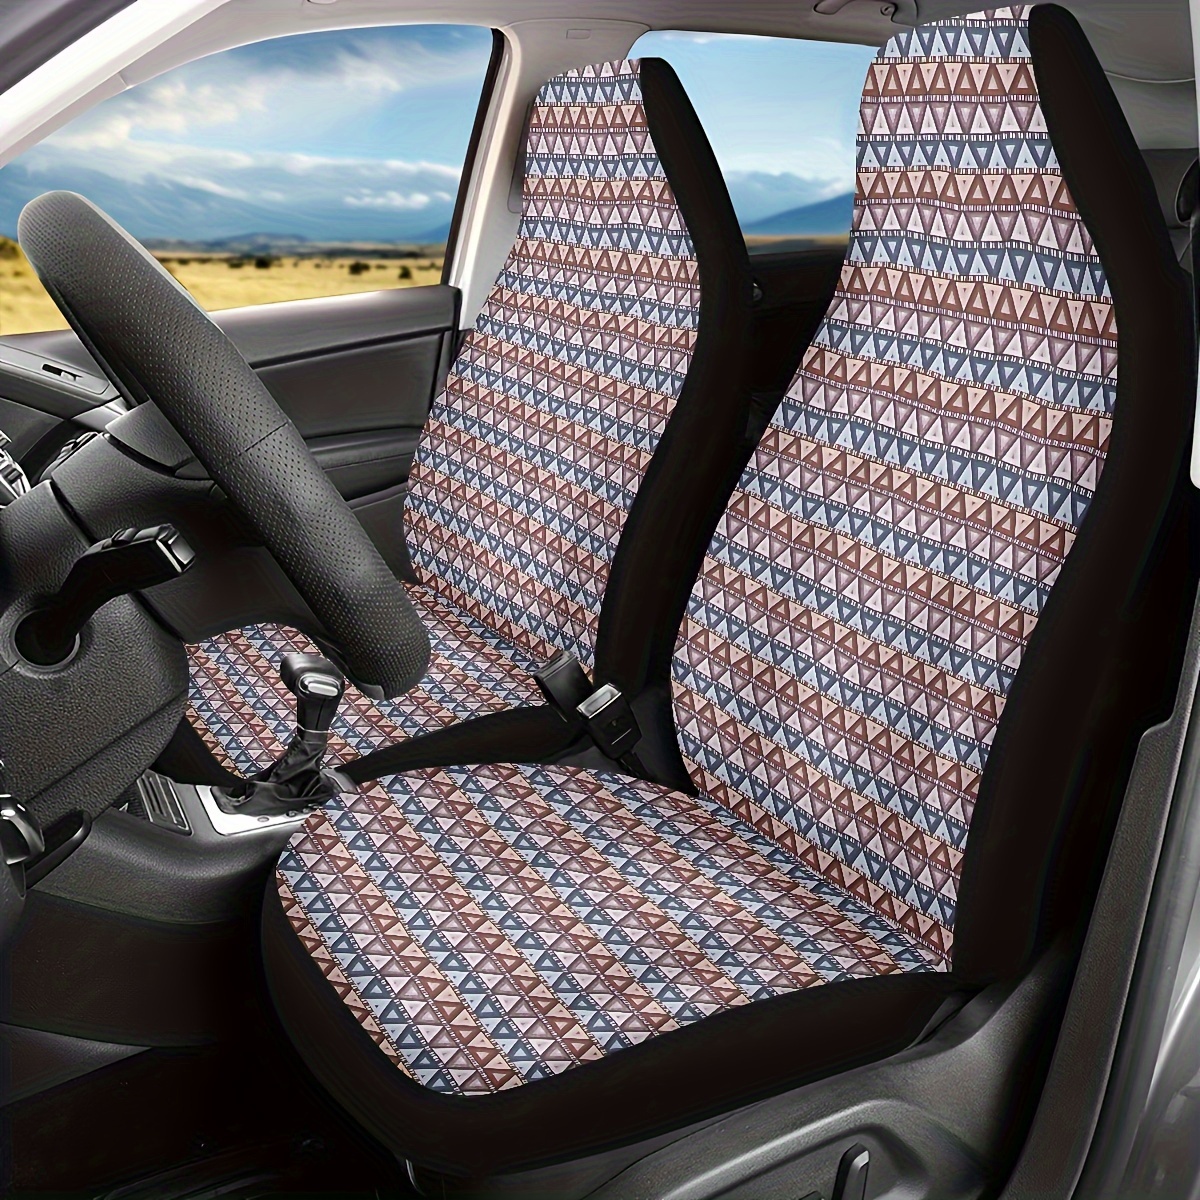  AUTO HIGH - Juego completo de 11 fundas para asientos de coche,  de cuero sintético de primera calidad, para asientos delanteros y traseros,  se adapta a la mayoría de coches, camiones